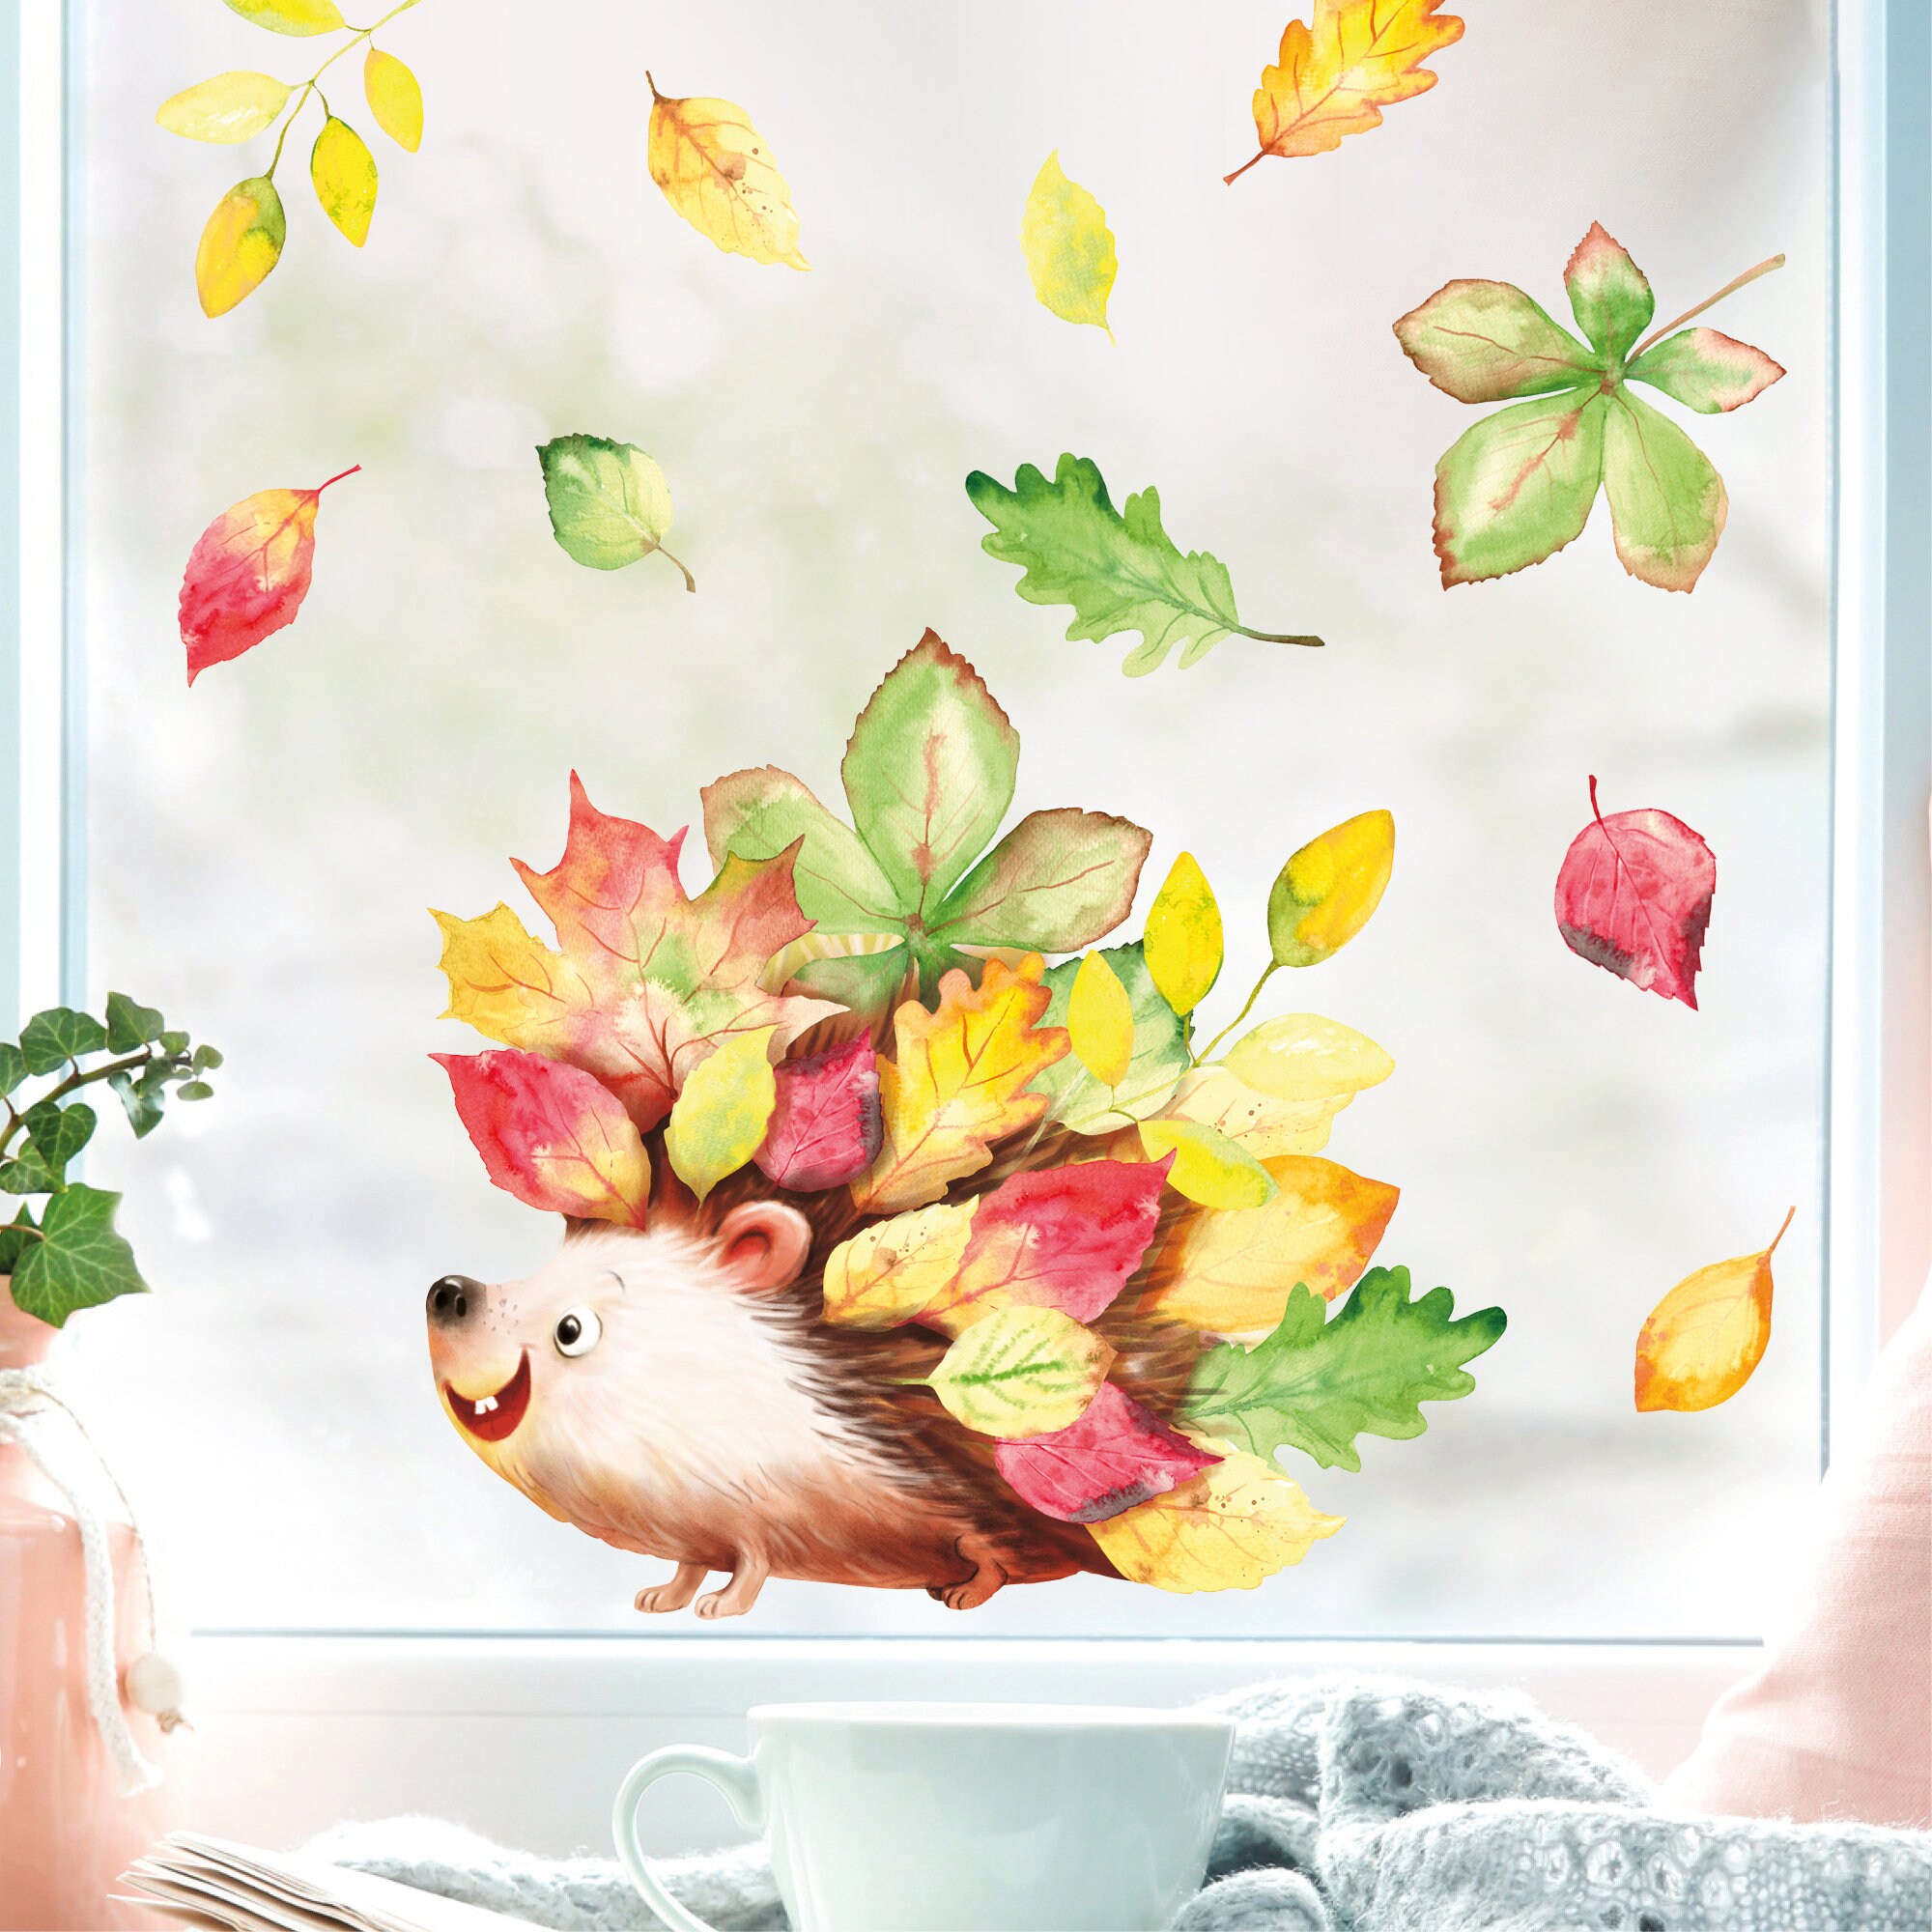 Fensterbild Herbst Herbstblätter Igel bunt wiederverwendbare Fensteraufkleber Kinderzimmer Baby Kind